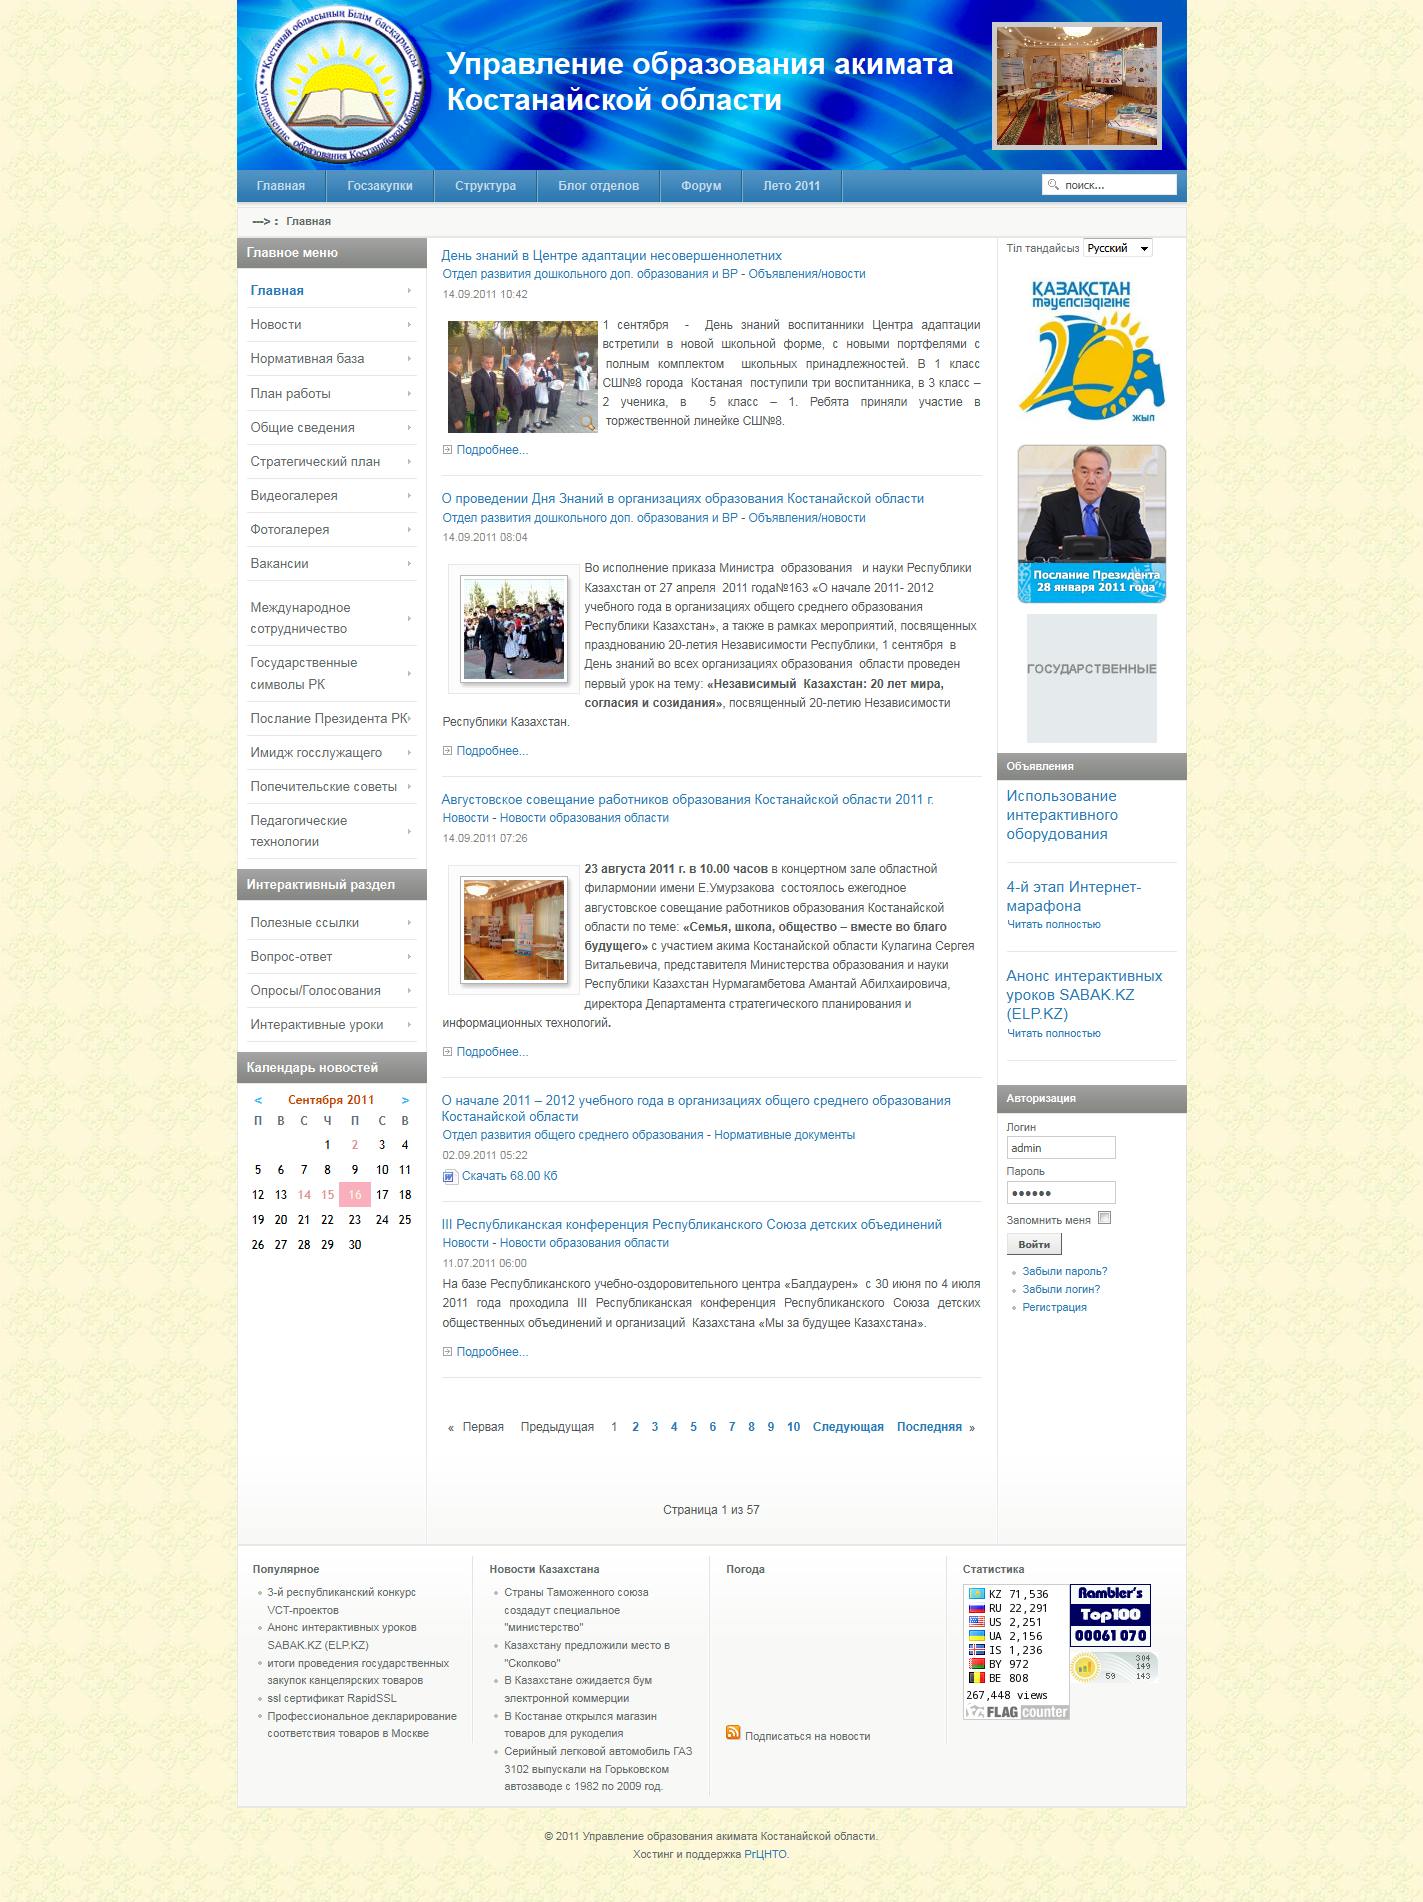 Сайт Управления образования Костанайской области